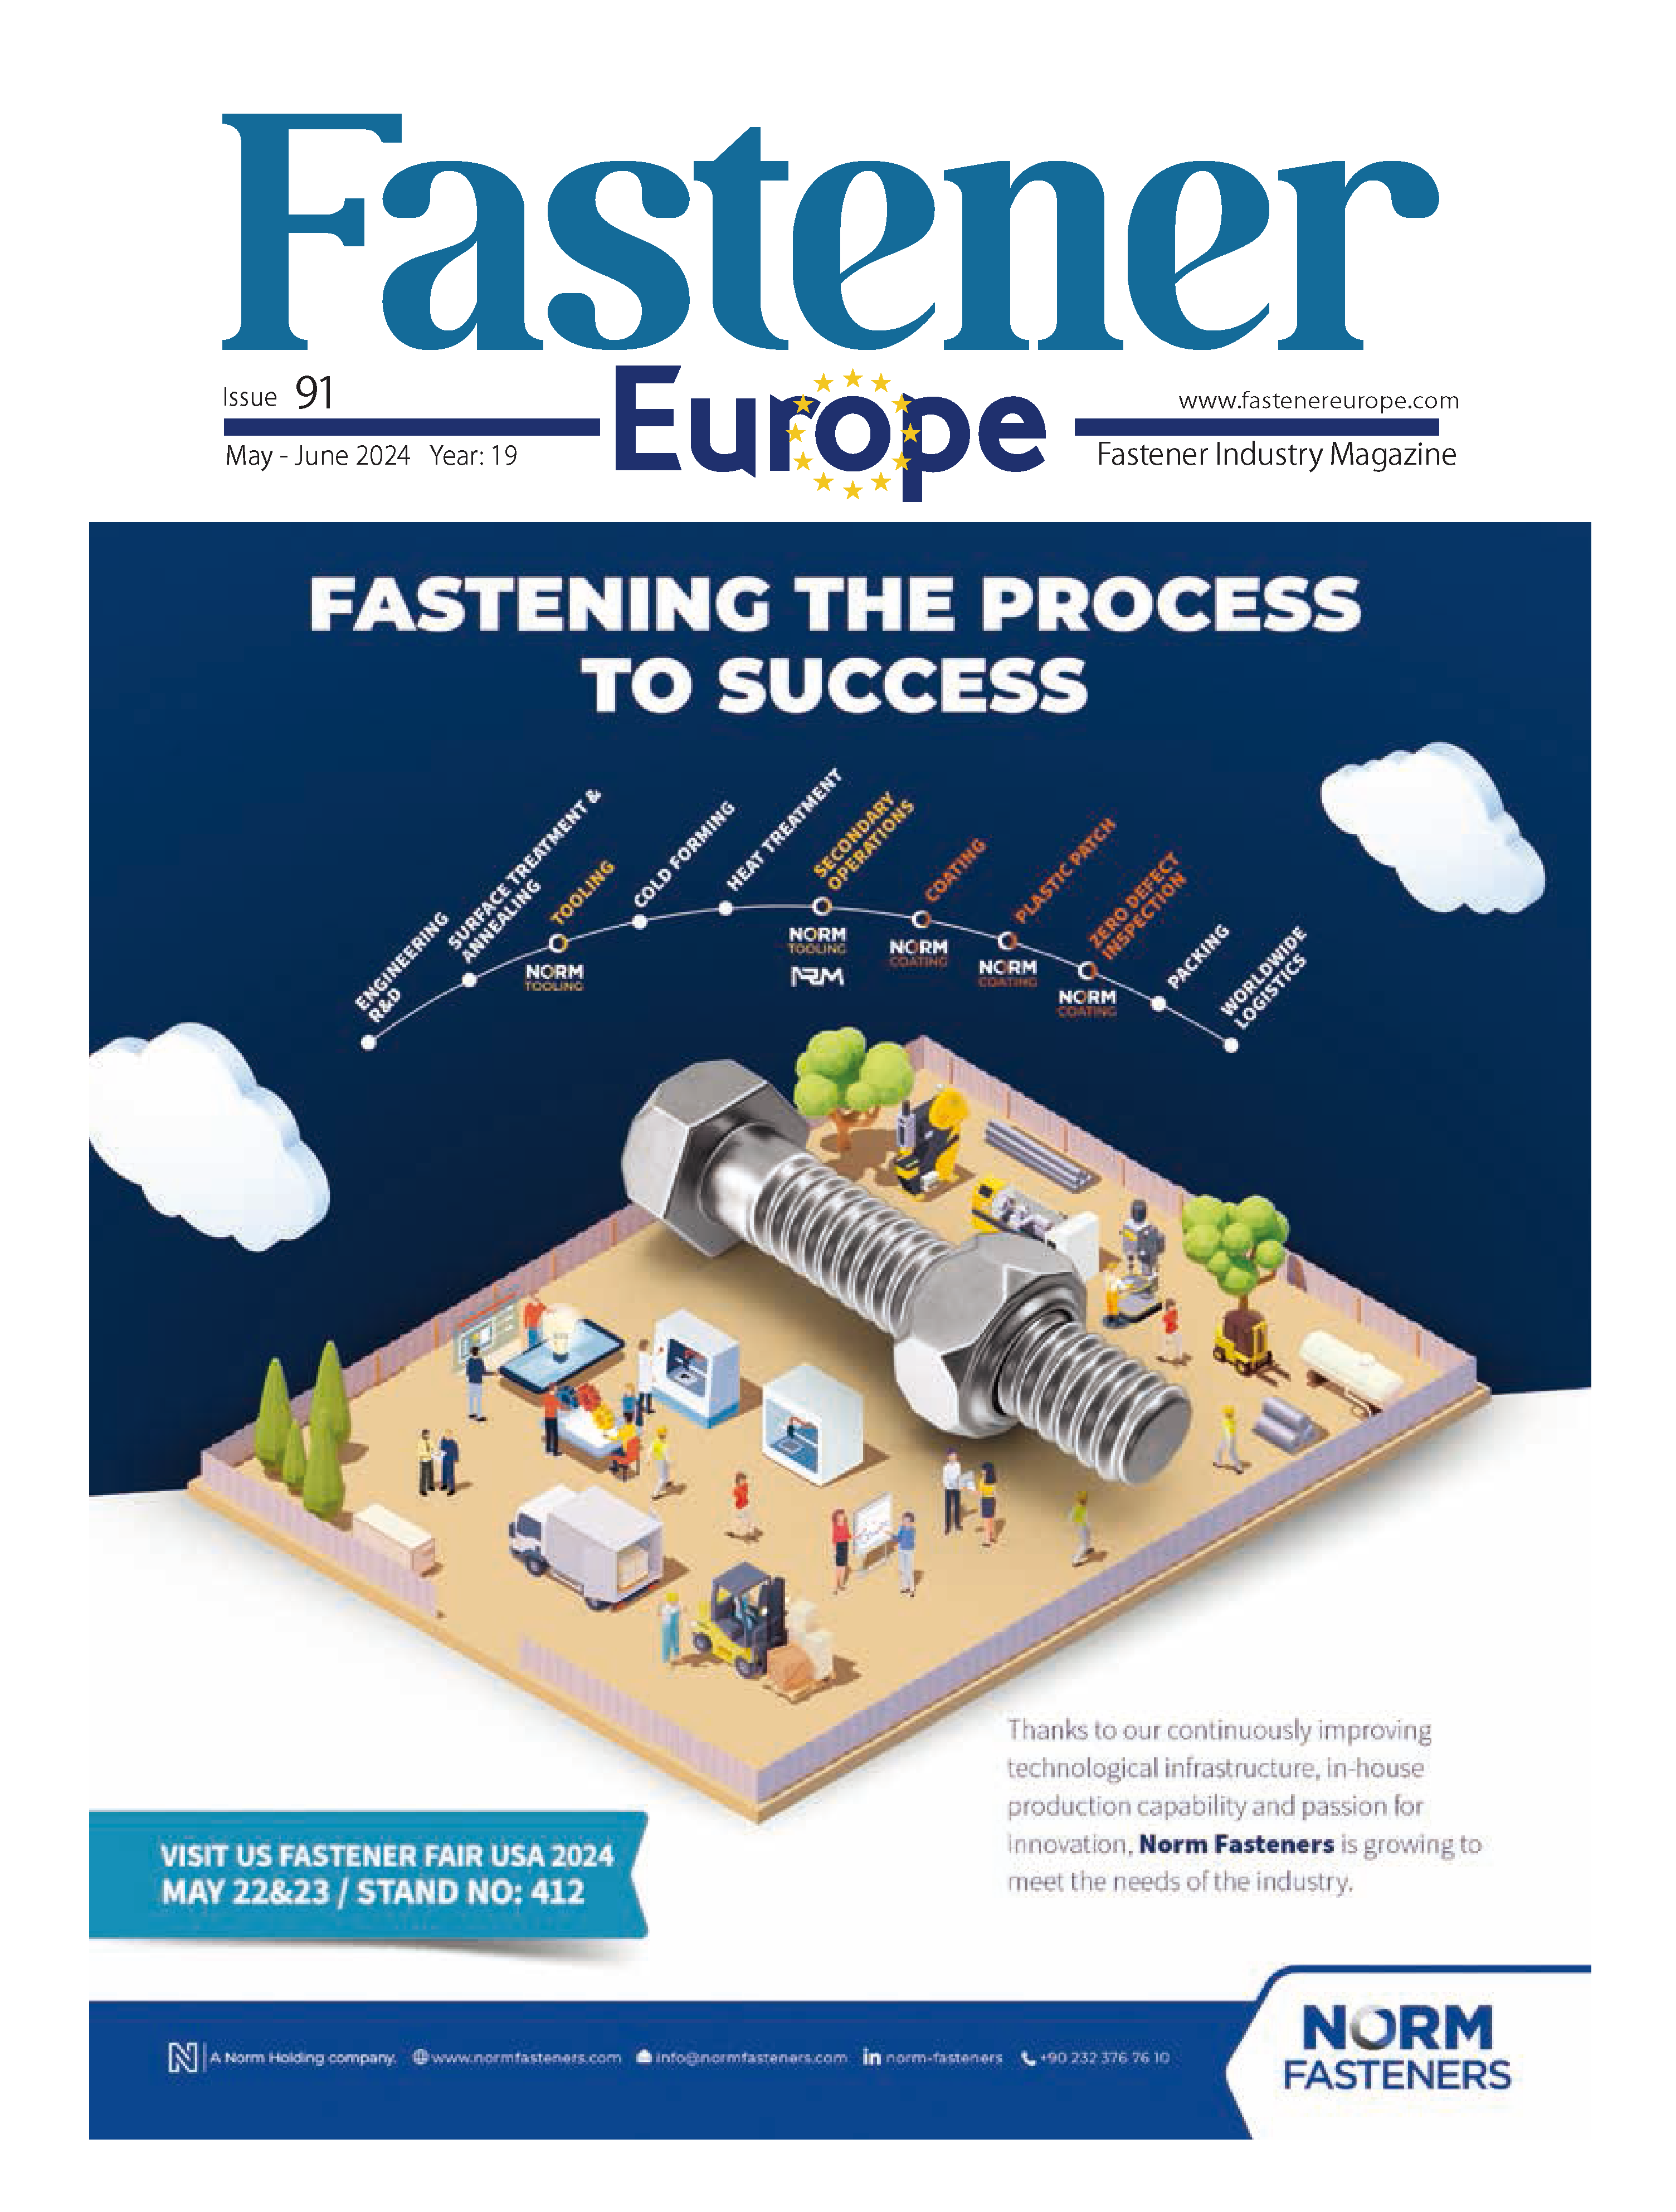 ヨーロッパのファスナー業界誌「ファスナーヨーロッパマガジン」に記事が掲載されました